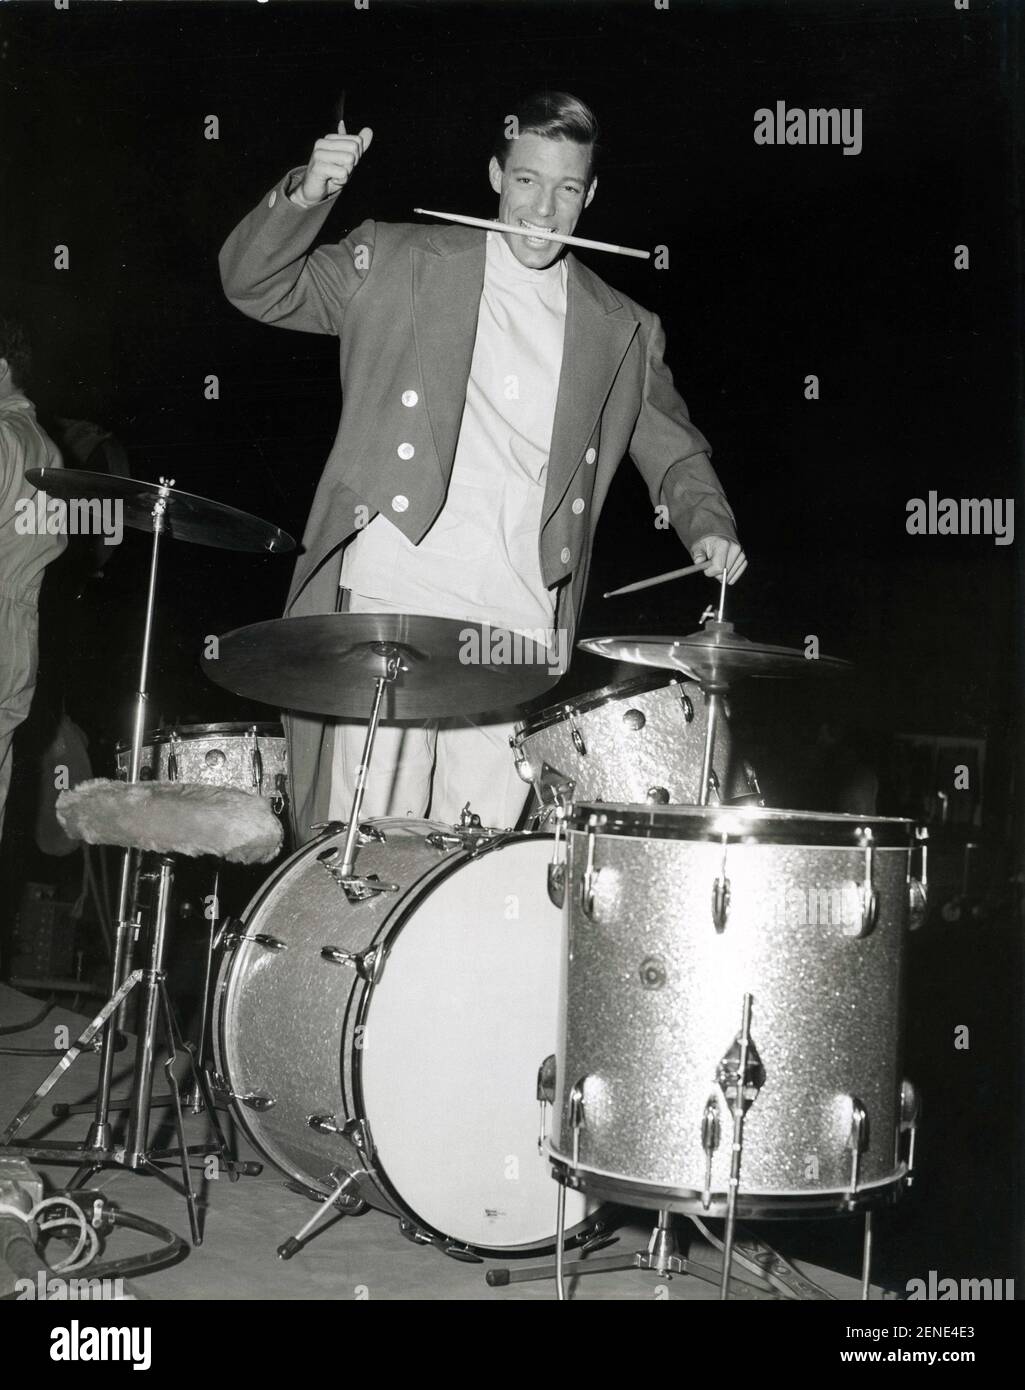 Während einer Episode der Fernsehserie Dr. Kildare spielte Richard Chamberlain um 1963 die Trommeln Stockfoto